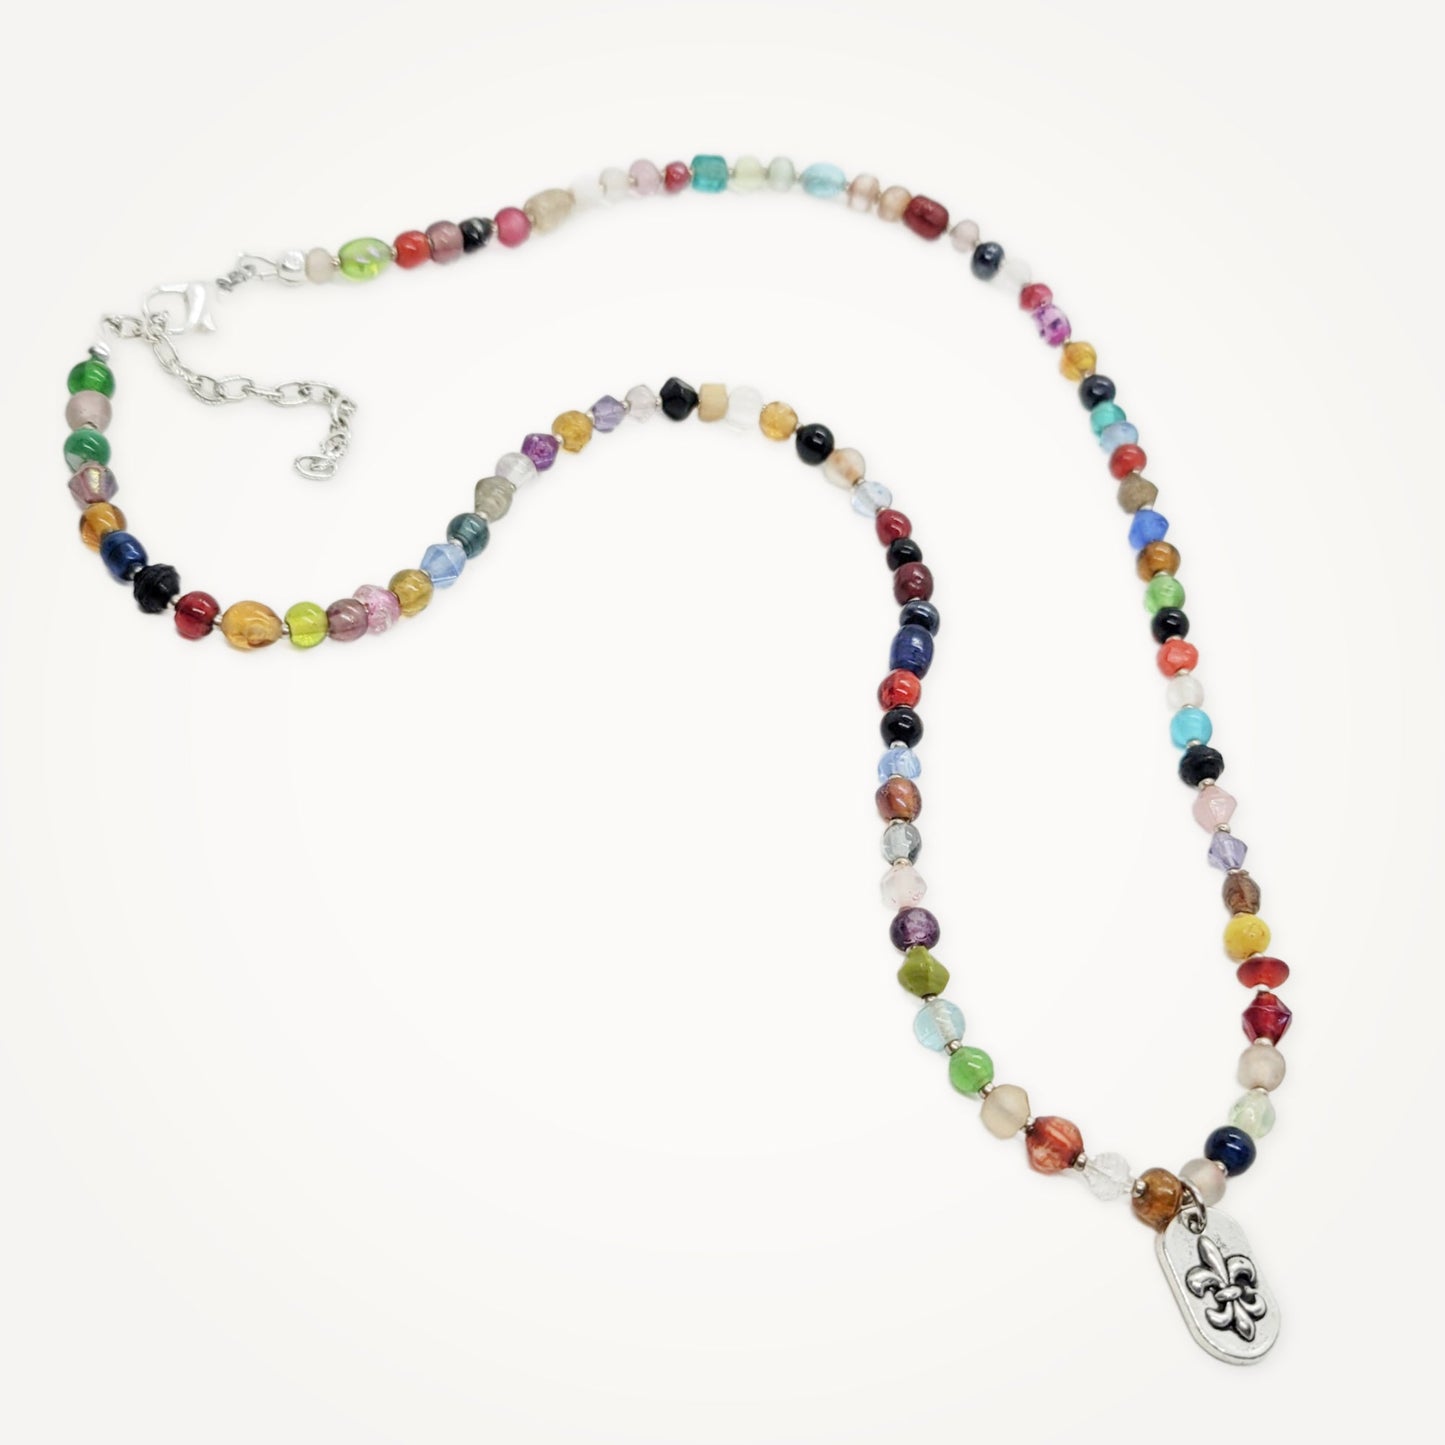 Vintage Mardi Gras Bead Necklace with Fleur de Lis